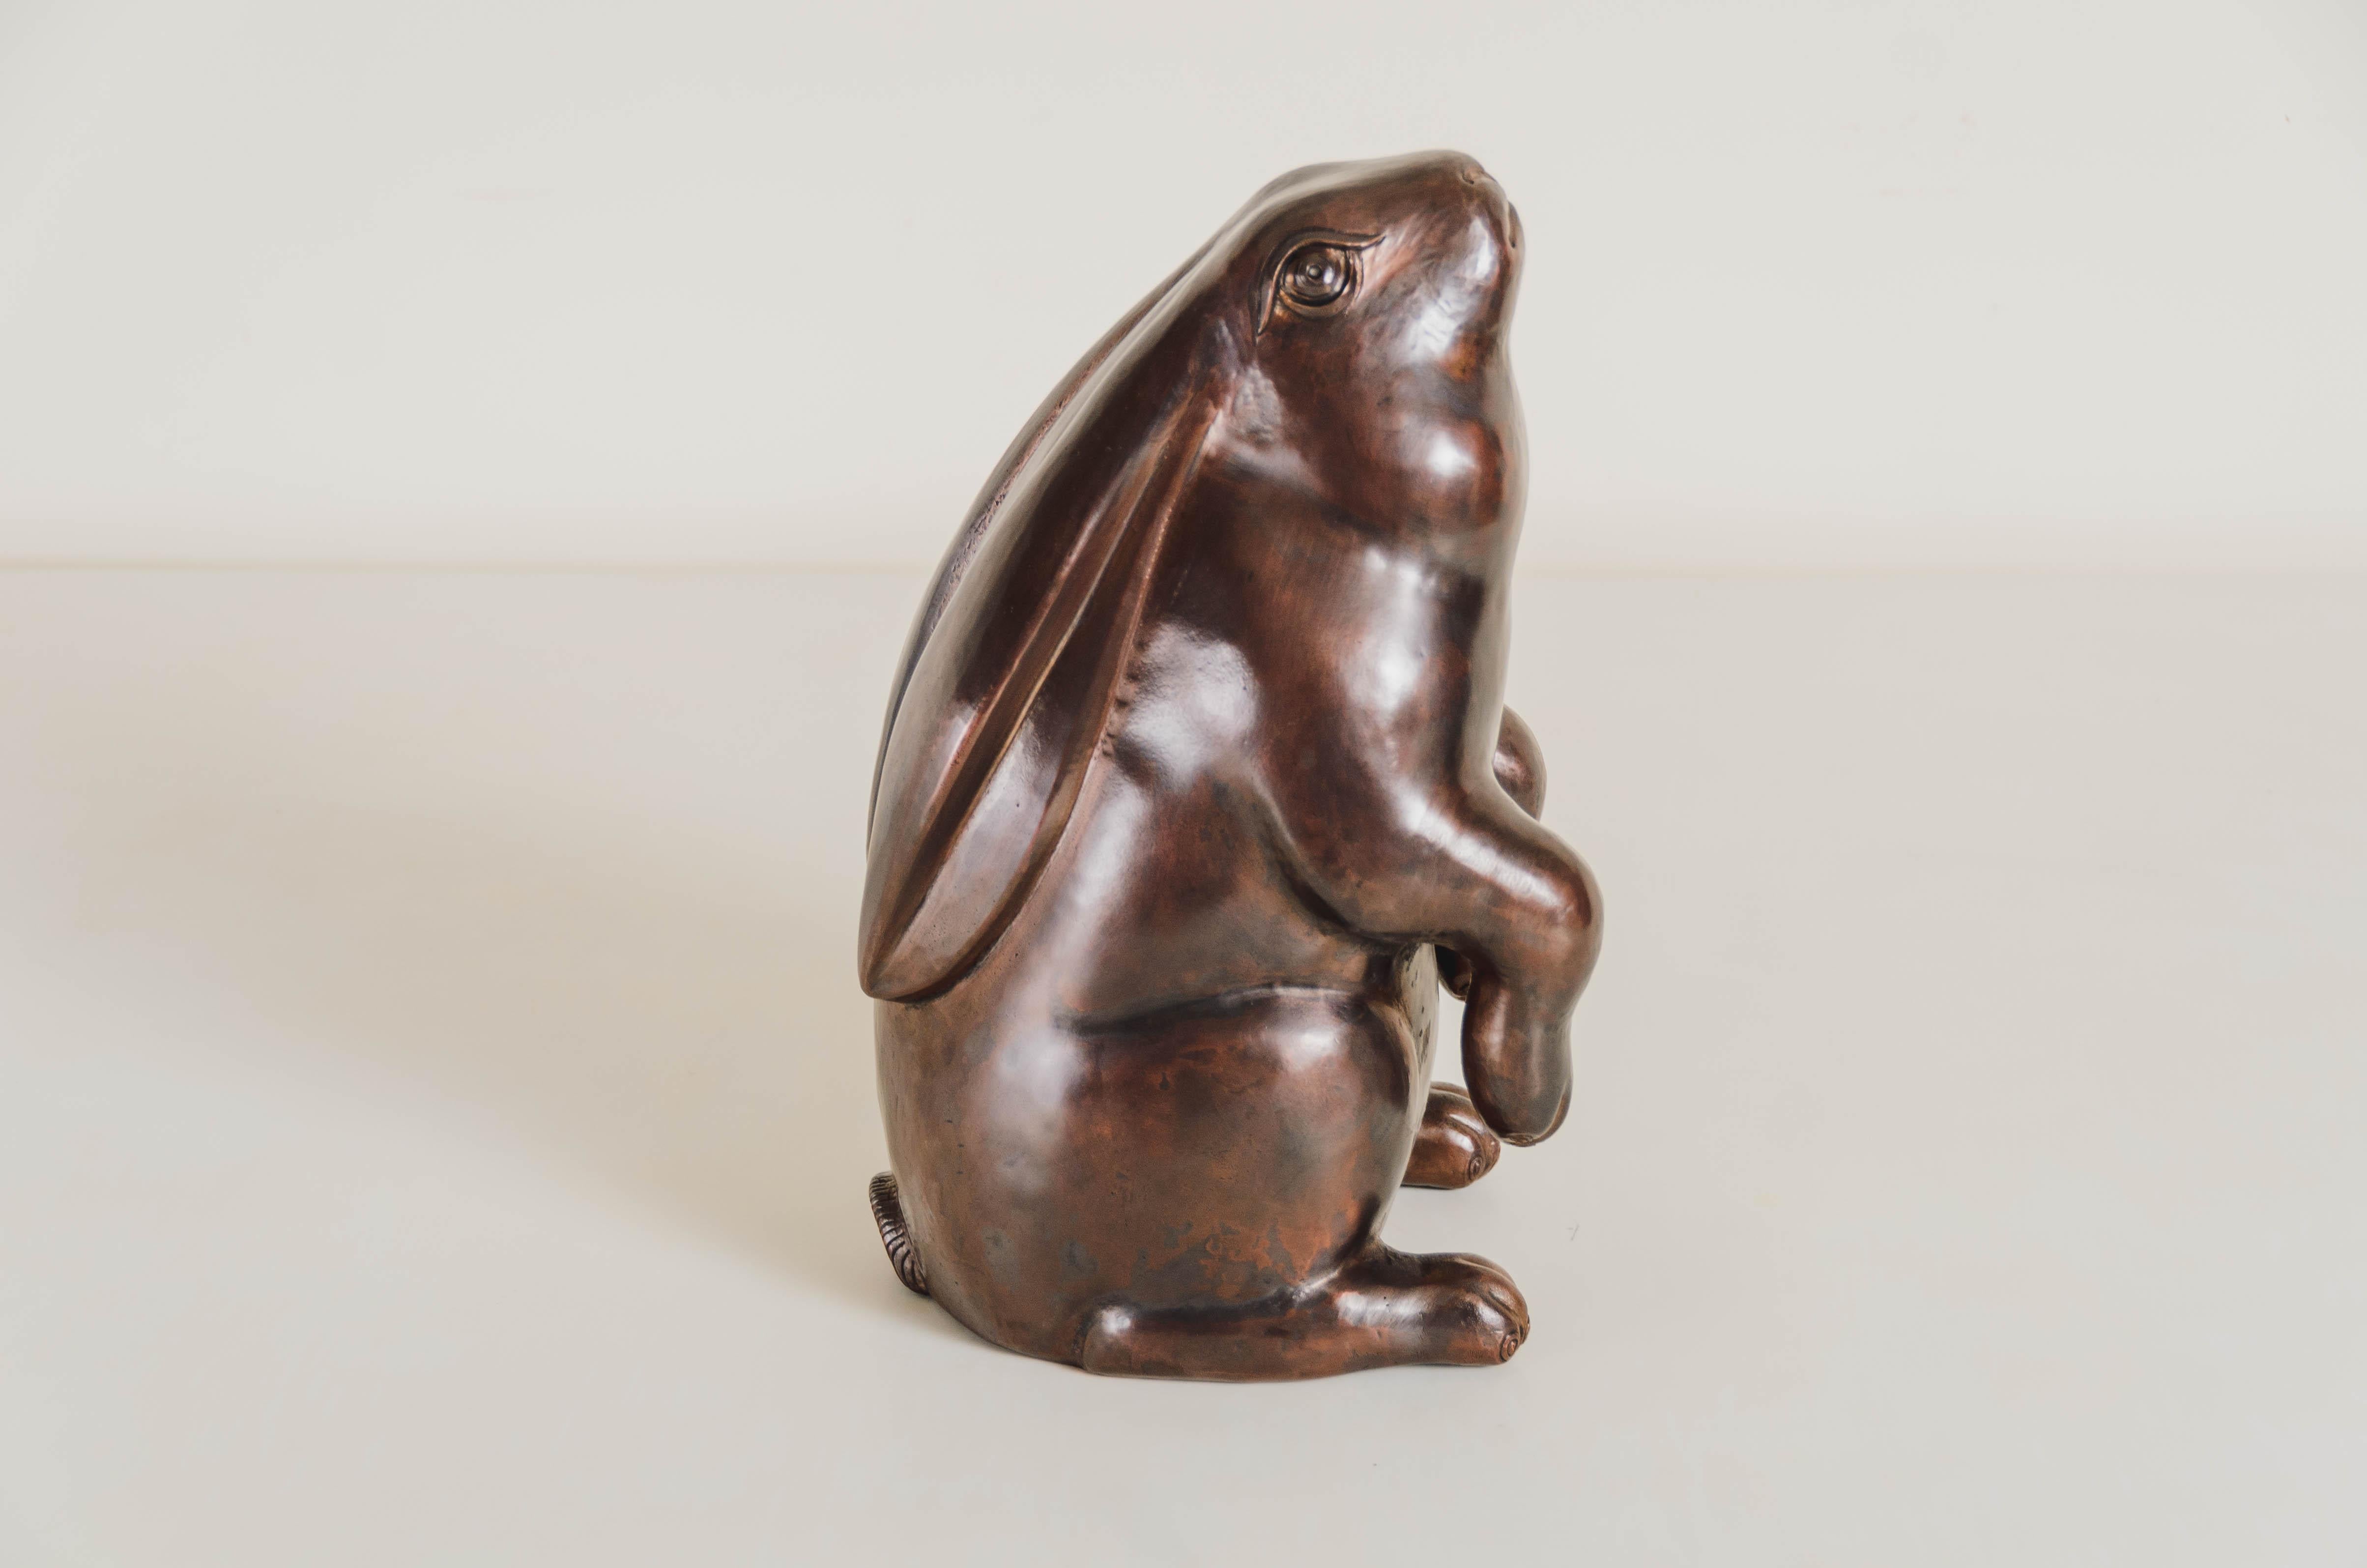 Kaninchen (sitzend)
tischskulptur
Dunkles antikes Kupfer
Hand Repoussé
Limitierte Auflage 
Jedes Stück wird individuell angefertigt und ist einzigartig. 

Repoussé ist die traditionelle Kunst, ein dekoratives Relief von Hand auf ein Blech zu